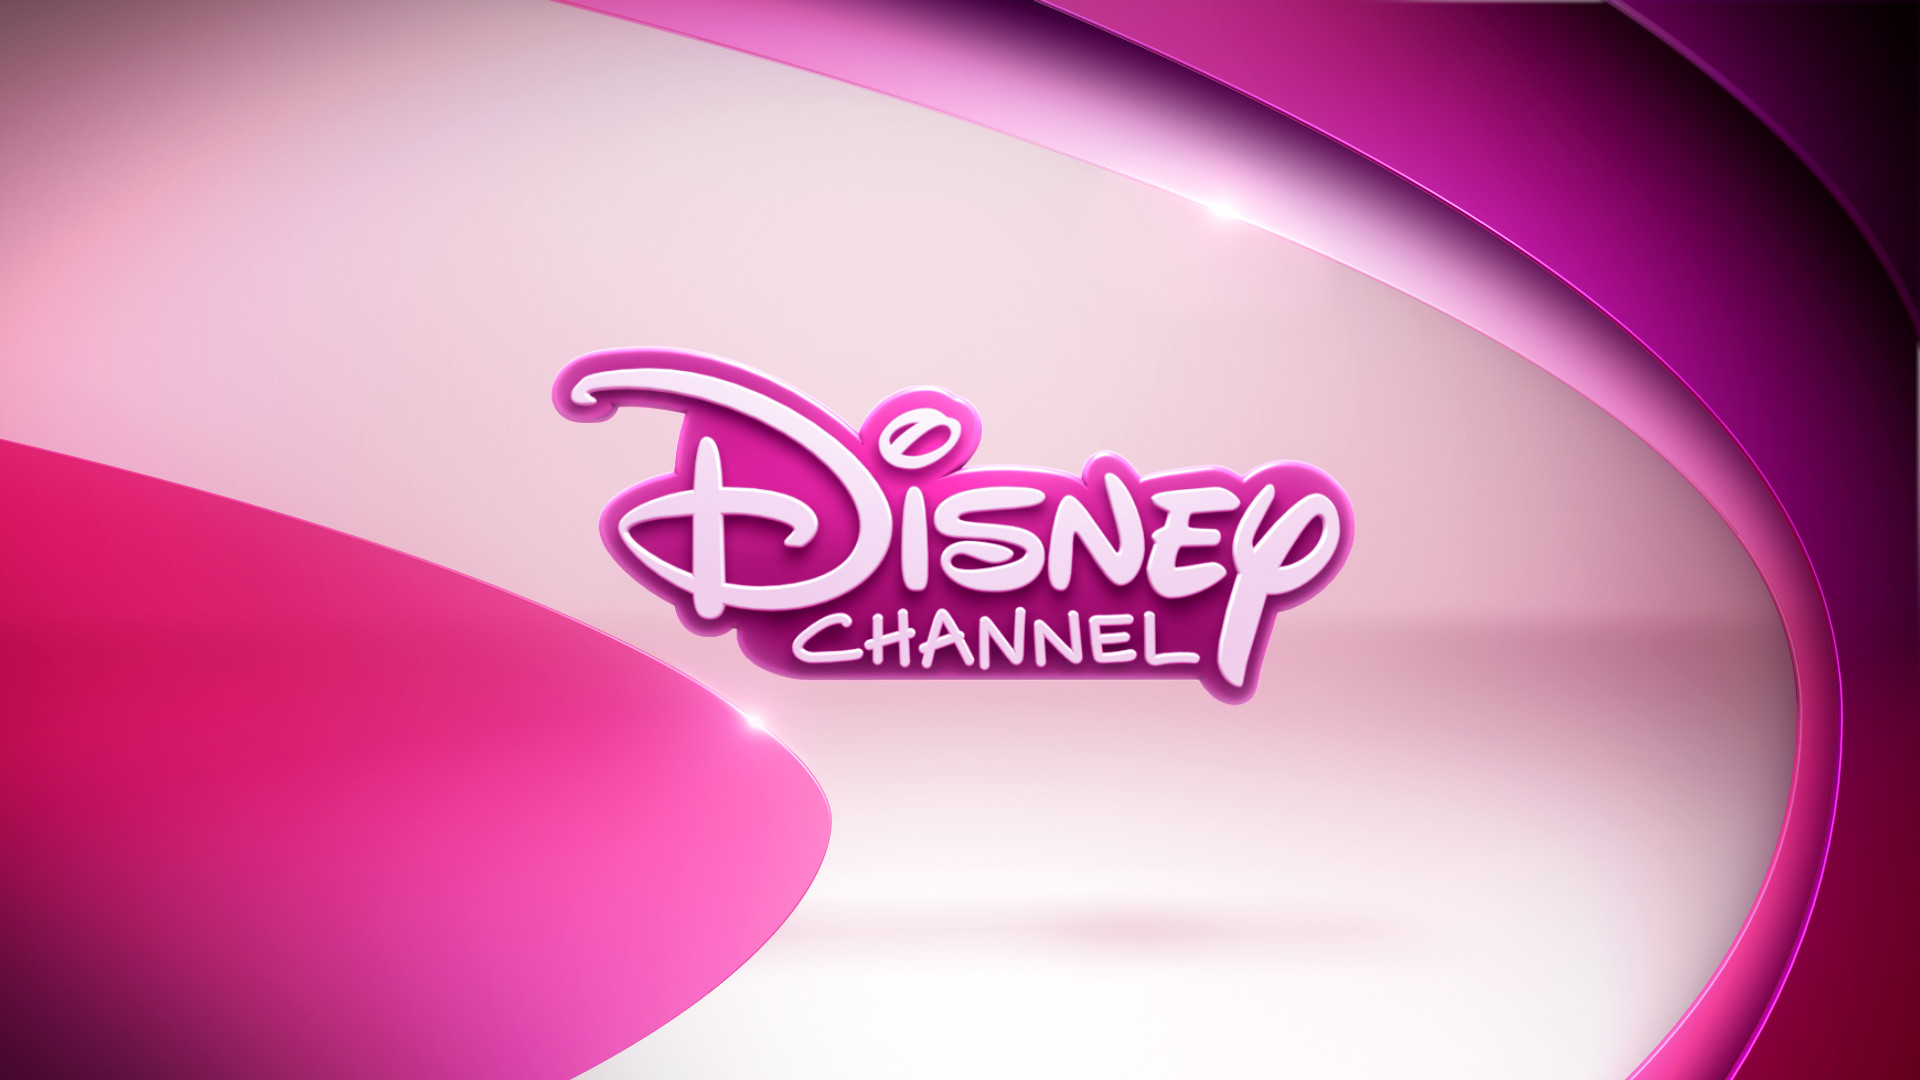 1920x1080, Disney Channel Wallpaper - Disney Channel Hd Logo - HD Wallpaper 